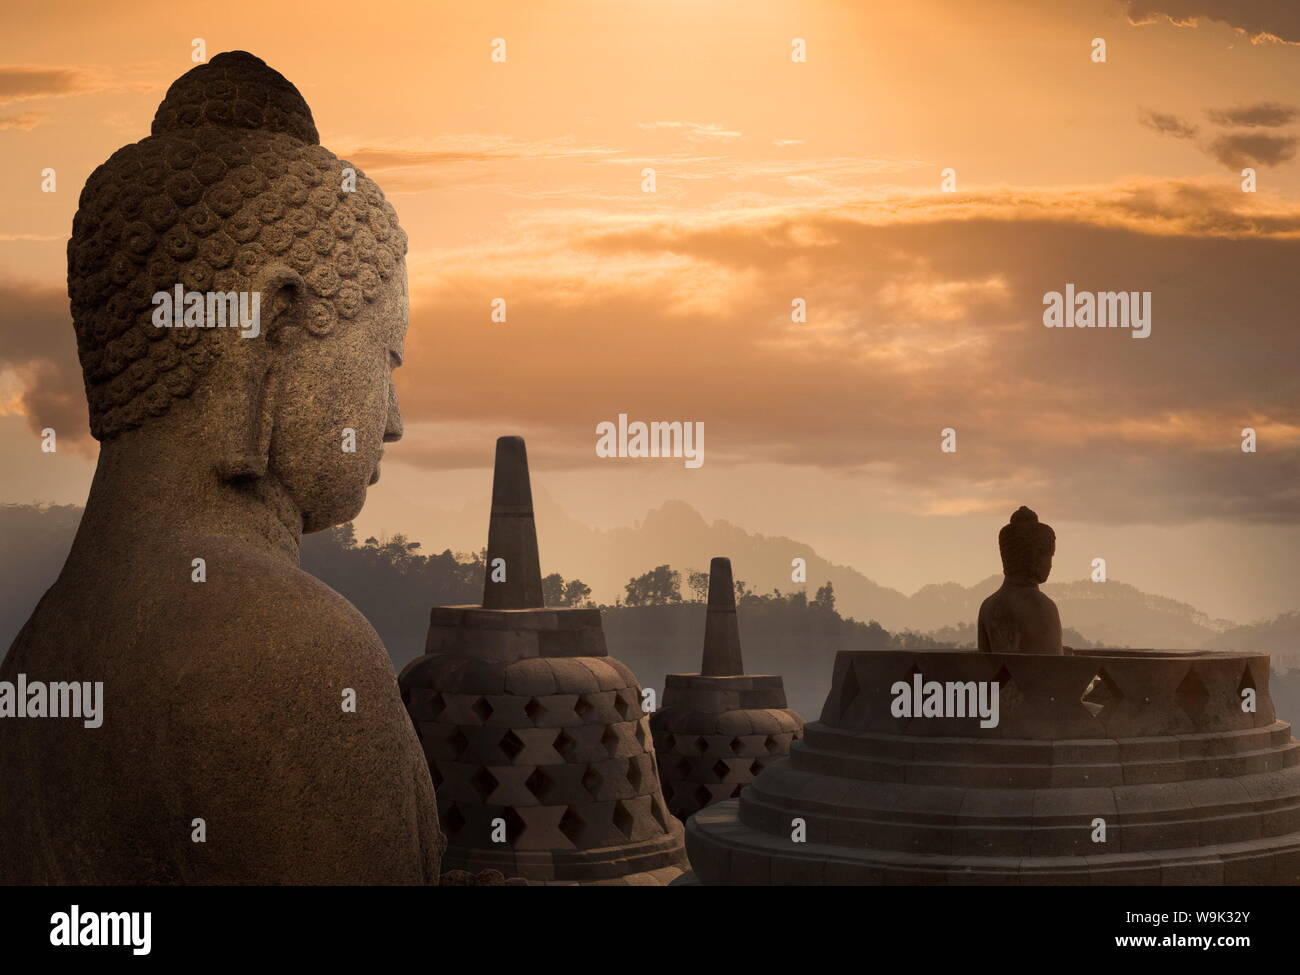 Temple bouddhiste de Borobudur, UNESCO World Heritage Site, Java, Indonésie, Asie du Sud, Asie Banque D'Images